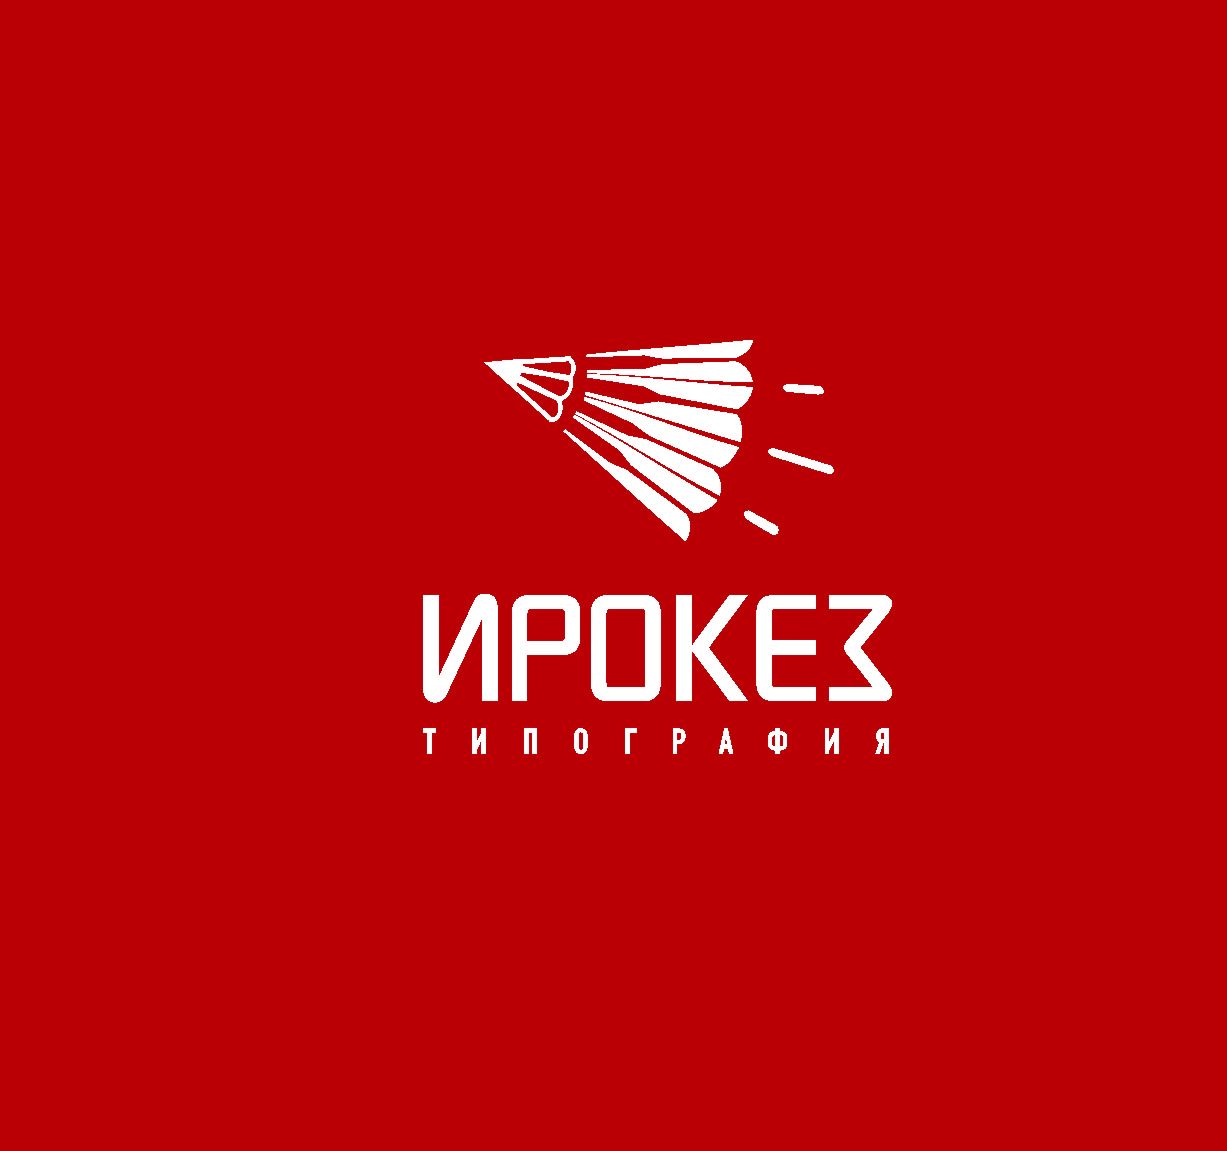 Редизайн лого и дизайн ФС для типографии Ирокез - дизайнер radchuk-ruslan